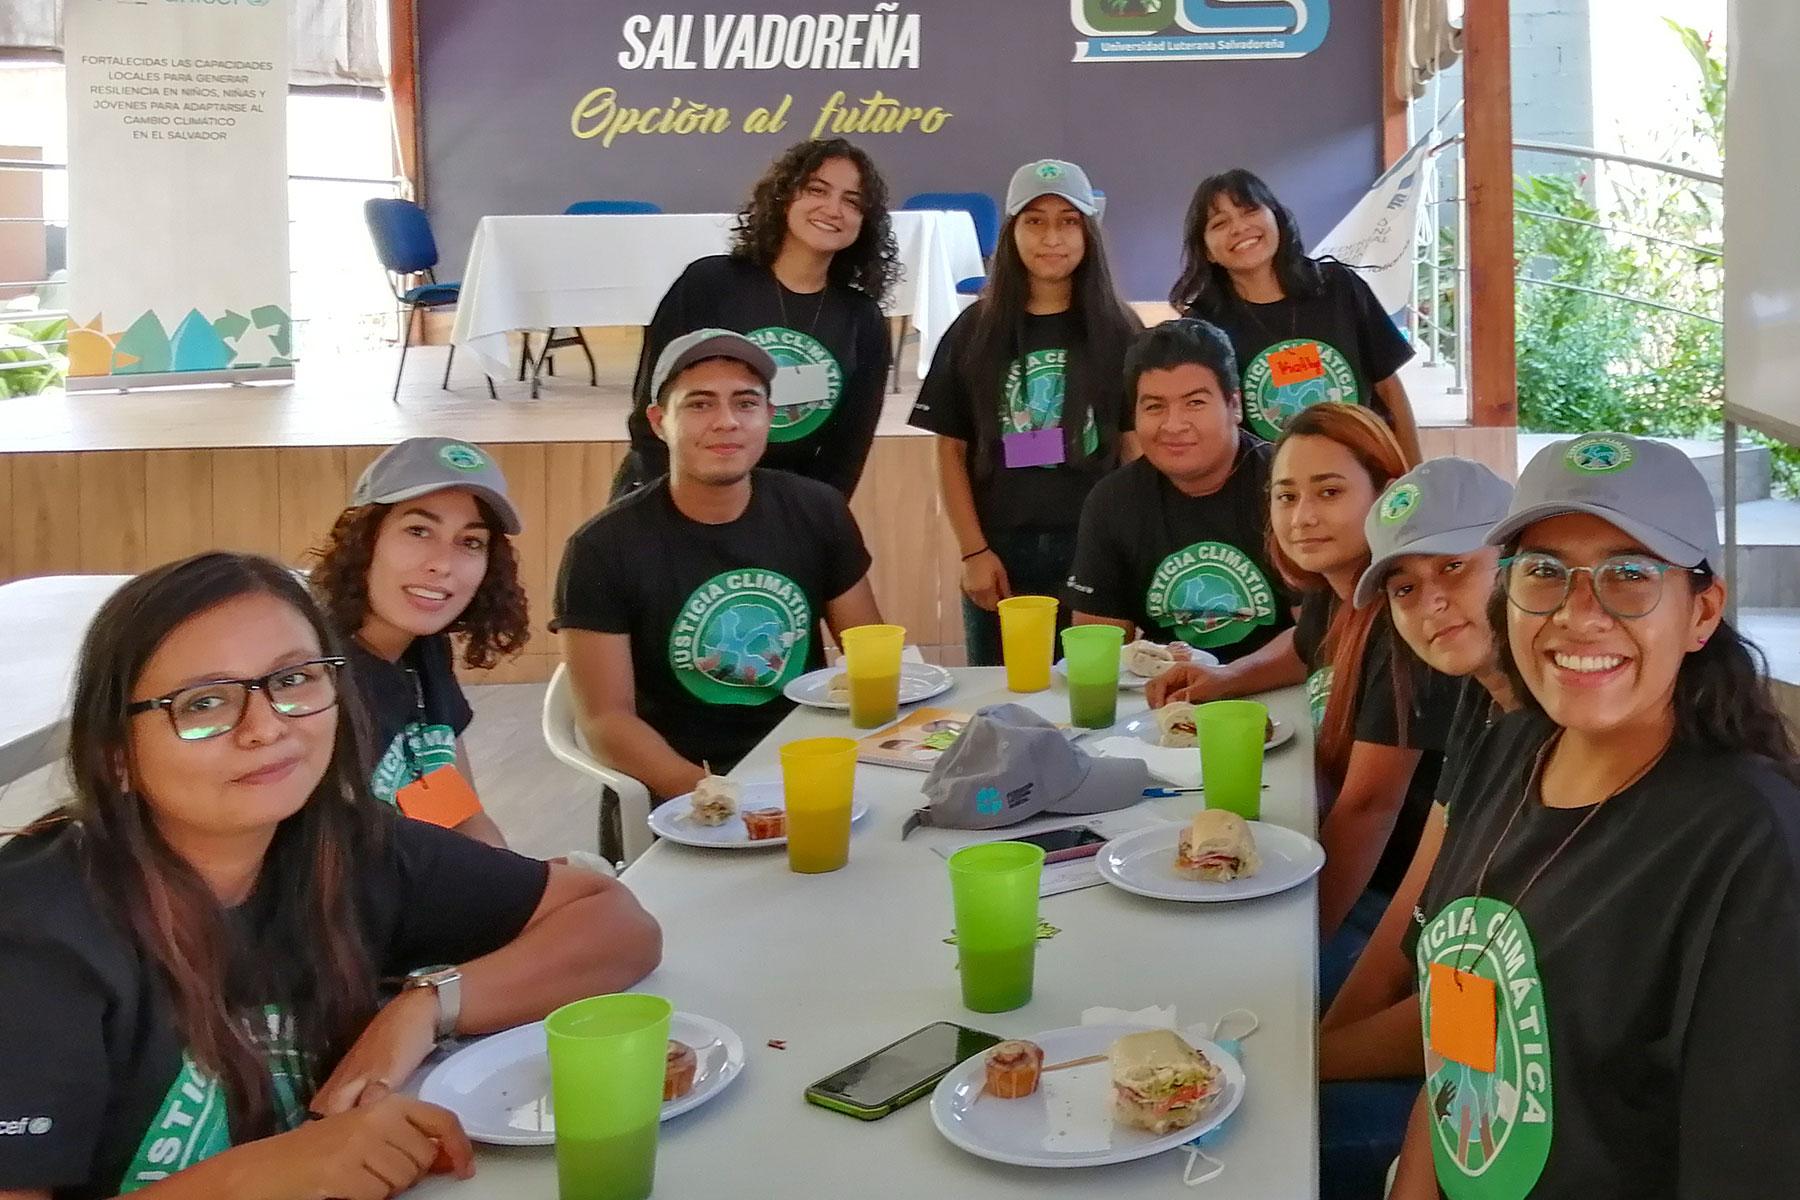 In der salvadorianischen lutherischen Kirche spielen die „Stewards of Creation“ eine Schlüsselrolle bei der Förderung von Klimagerechtigkeit und Schöpfungsbewahrung in Kirche und Gesellschaft. Hier genießen sie das Mittagessen während eines Workshops. Foto: SLS